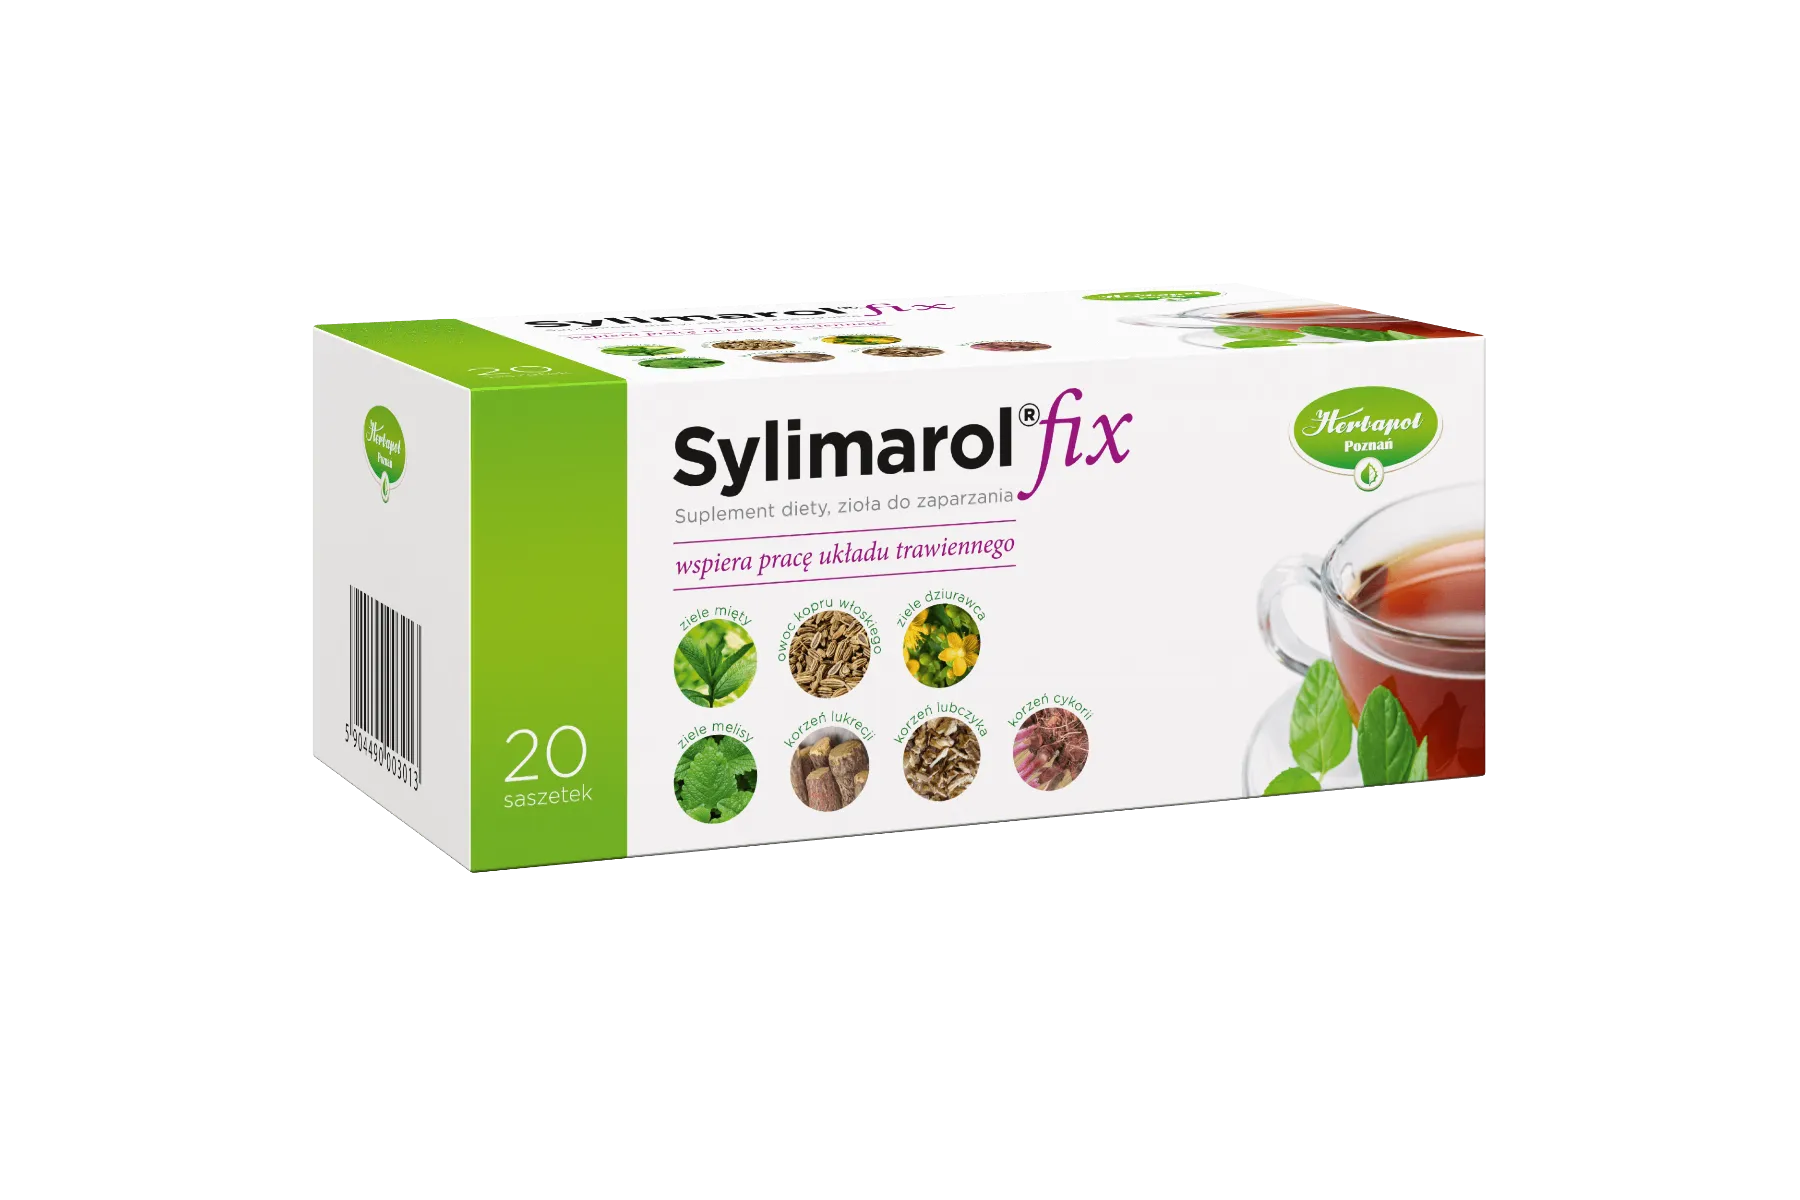 Sylimarol fix, zioła do zaparzania, suplement diety, 20 saszetek